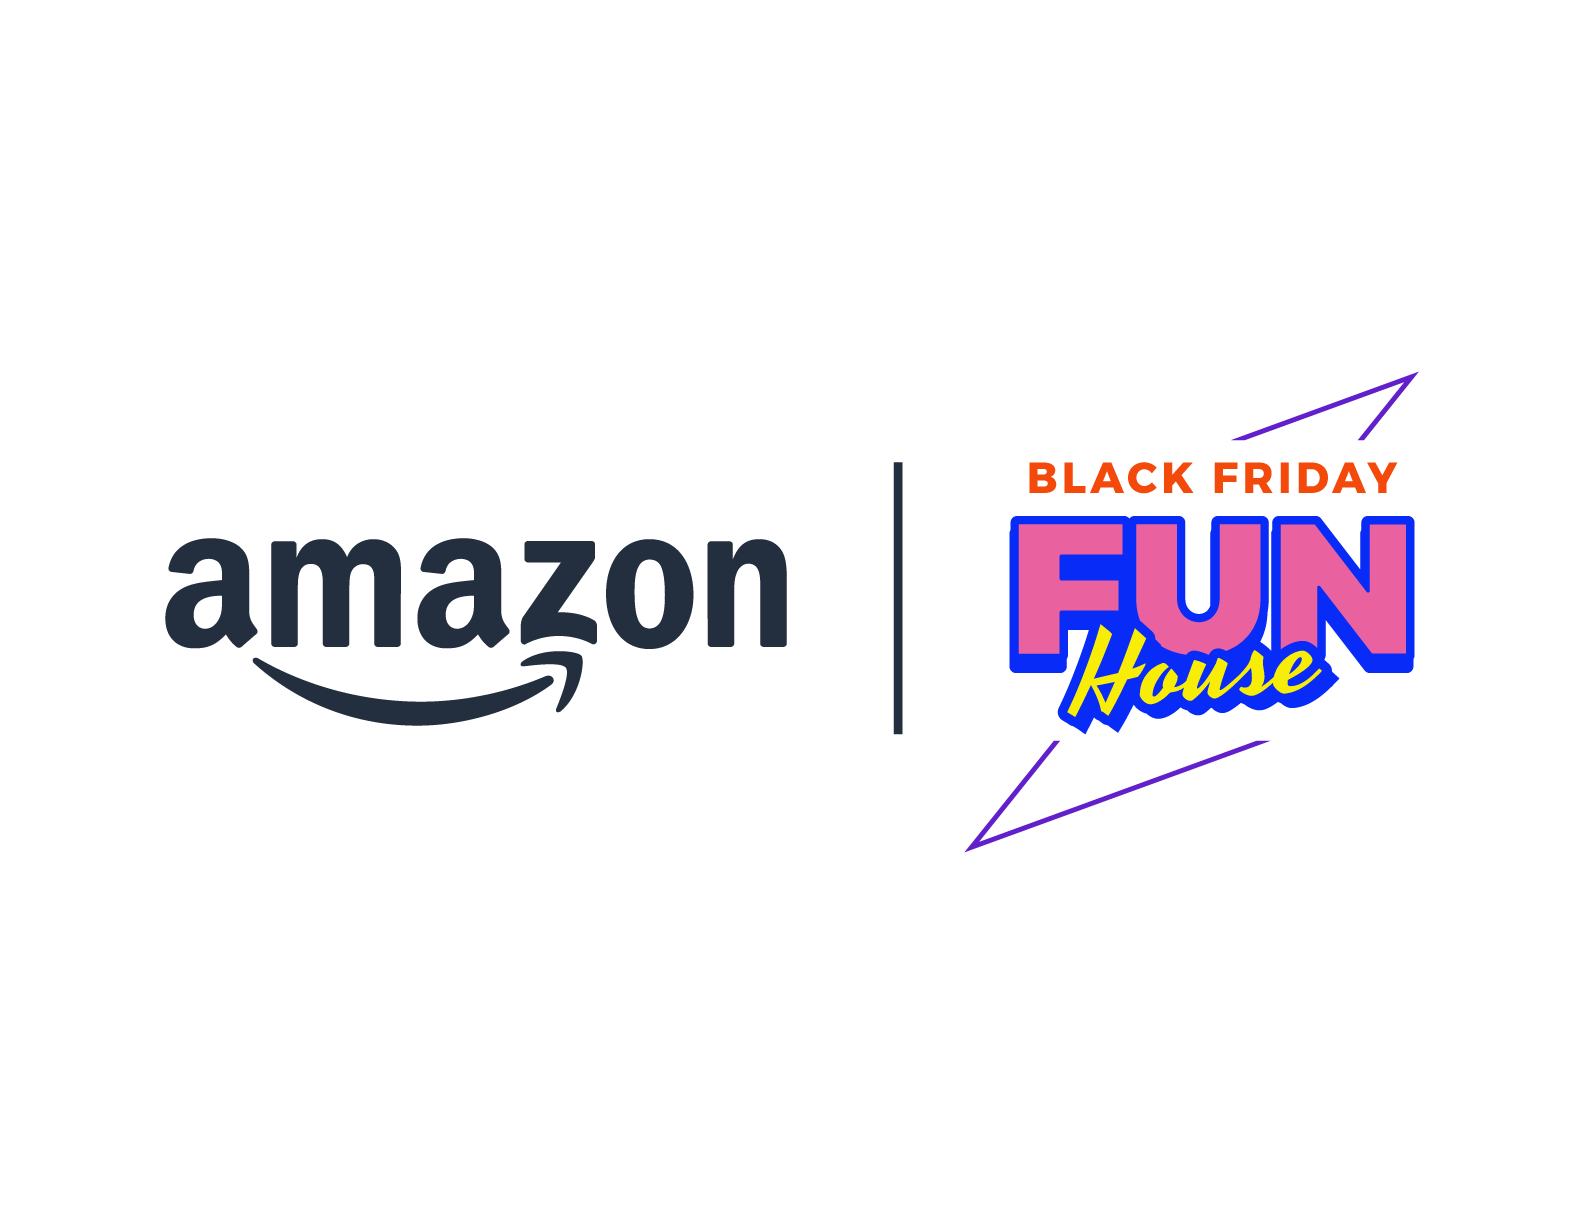 Inaugurata oggi la Amazon Black Friday Fun House, il nuovo spazio esperienziale temporaneo che celebra la settimana di Black Friday e l’arrivo del Natale